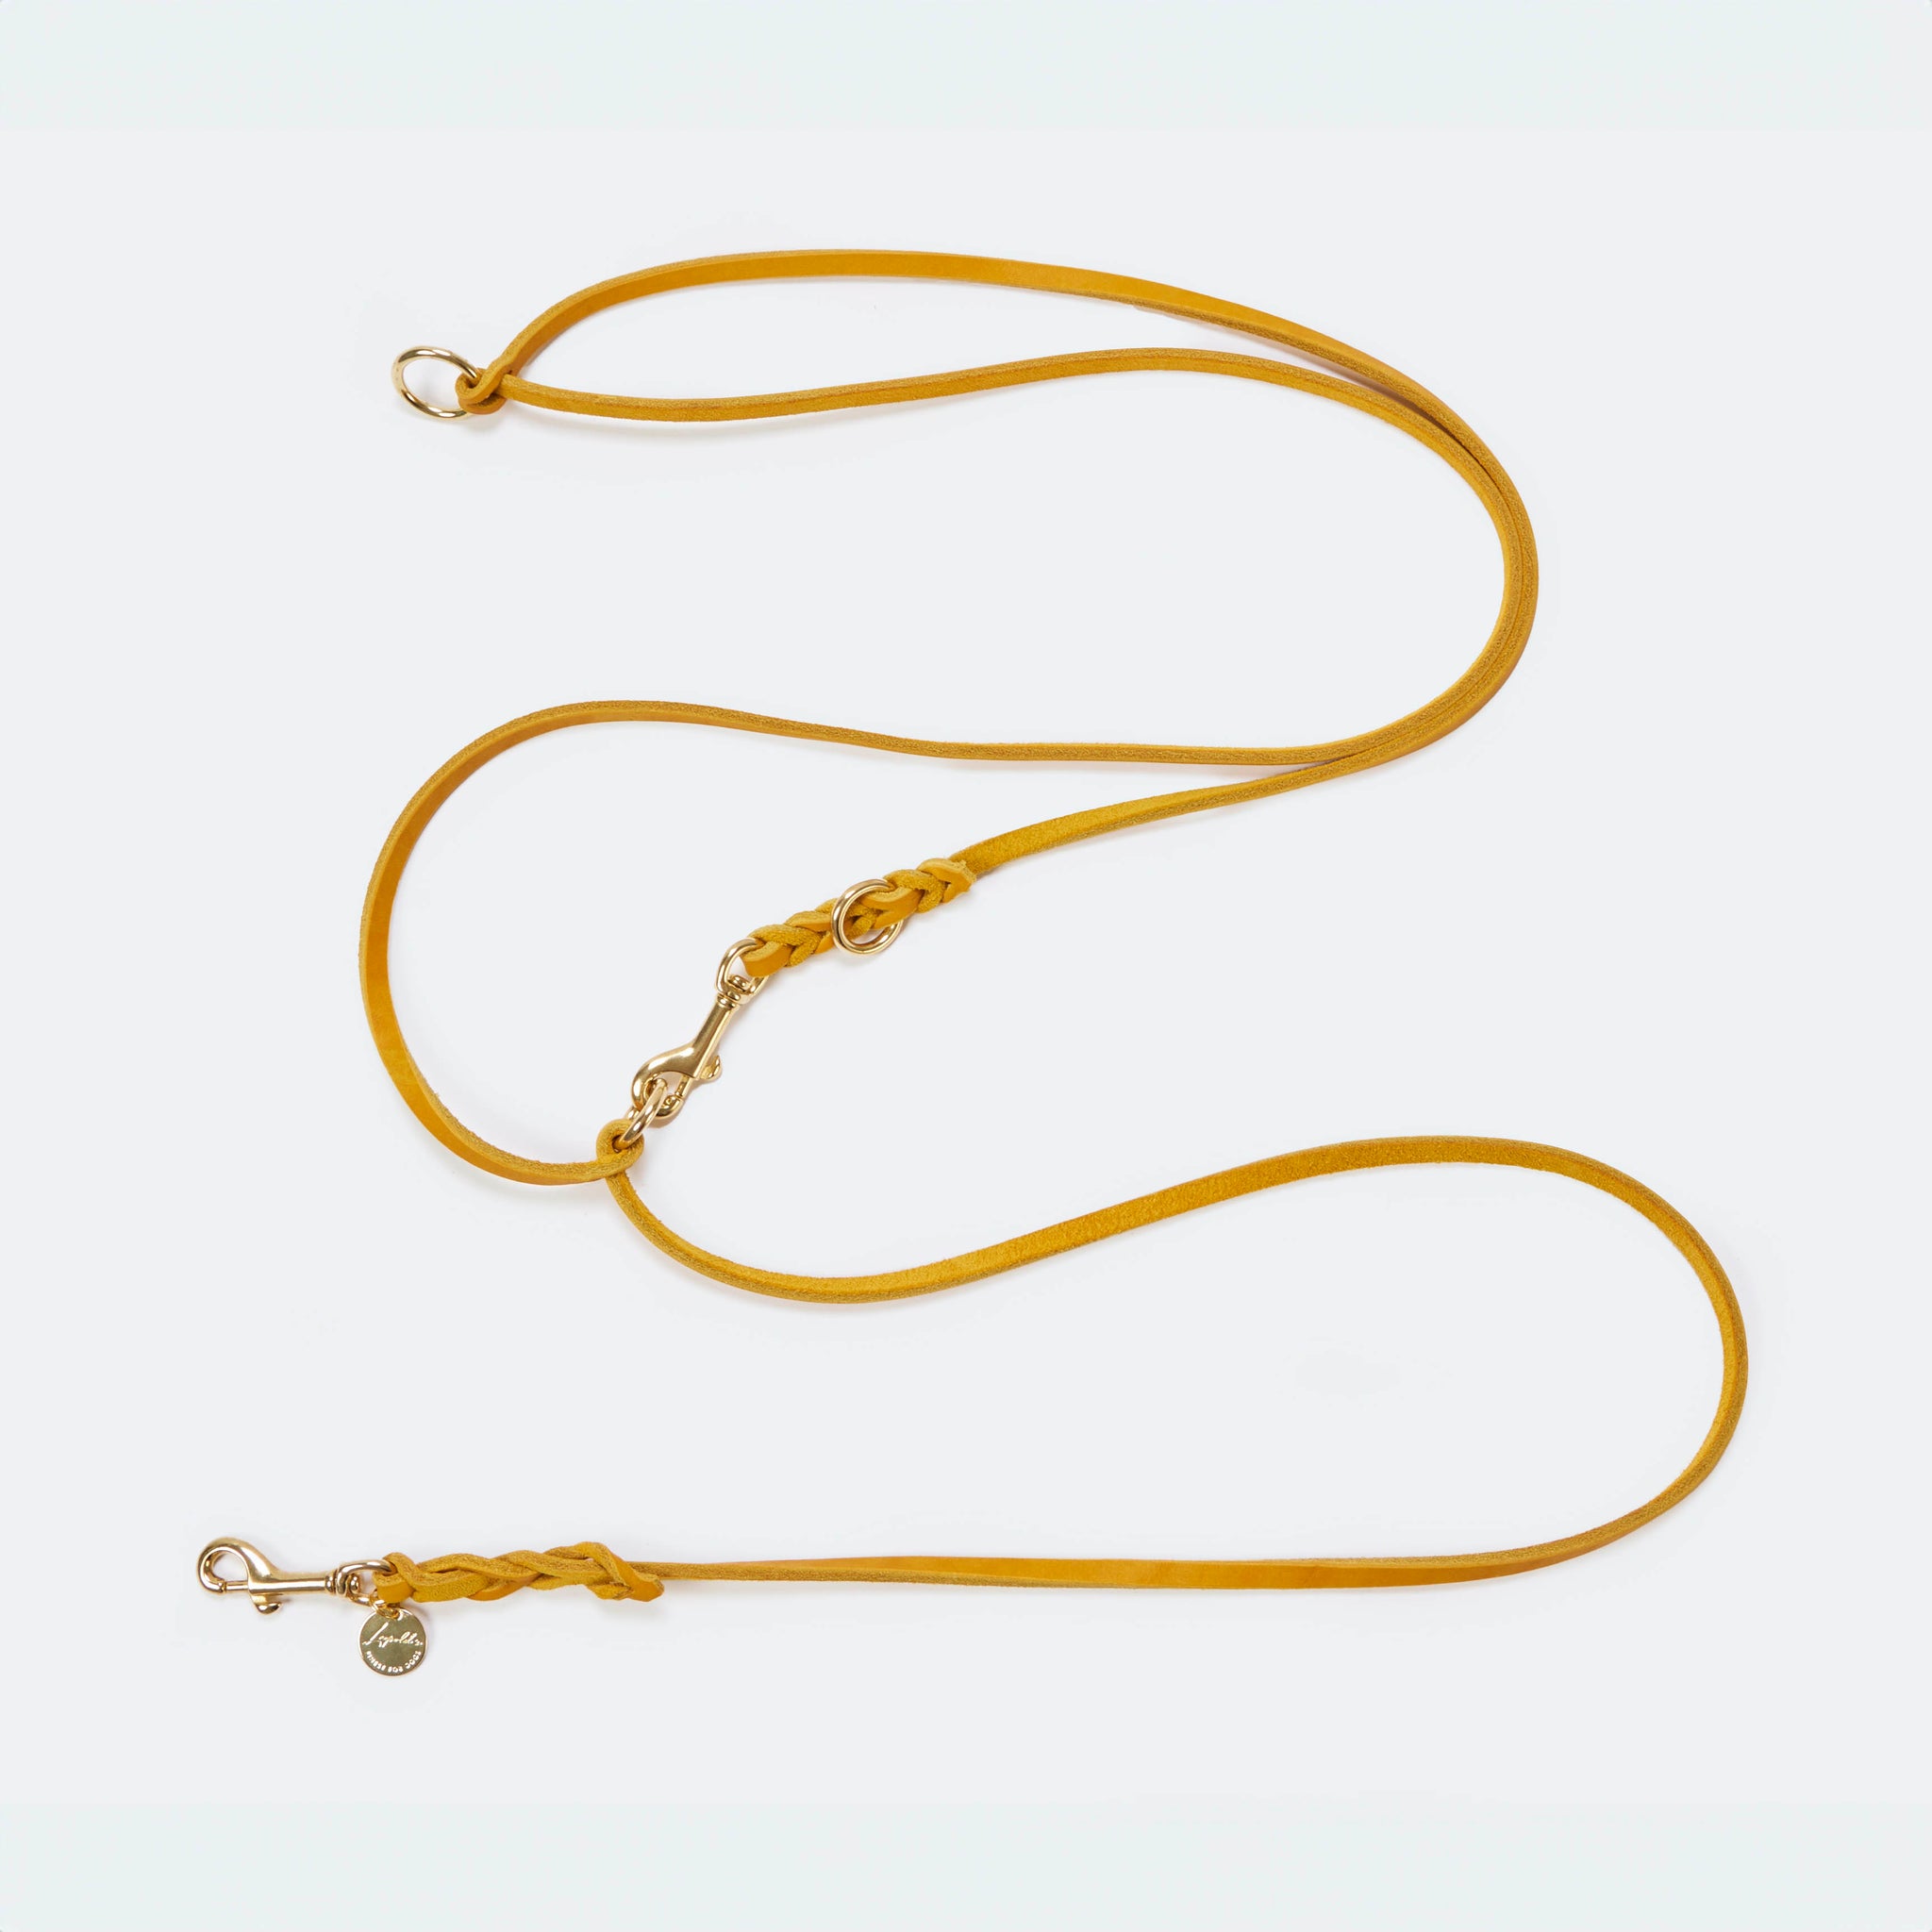 Hundeleine verstellbar Fettleder Gelb-Gold   - von Leopold's kaufen bei leopolds-finest [Gelb-Gold]